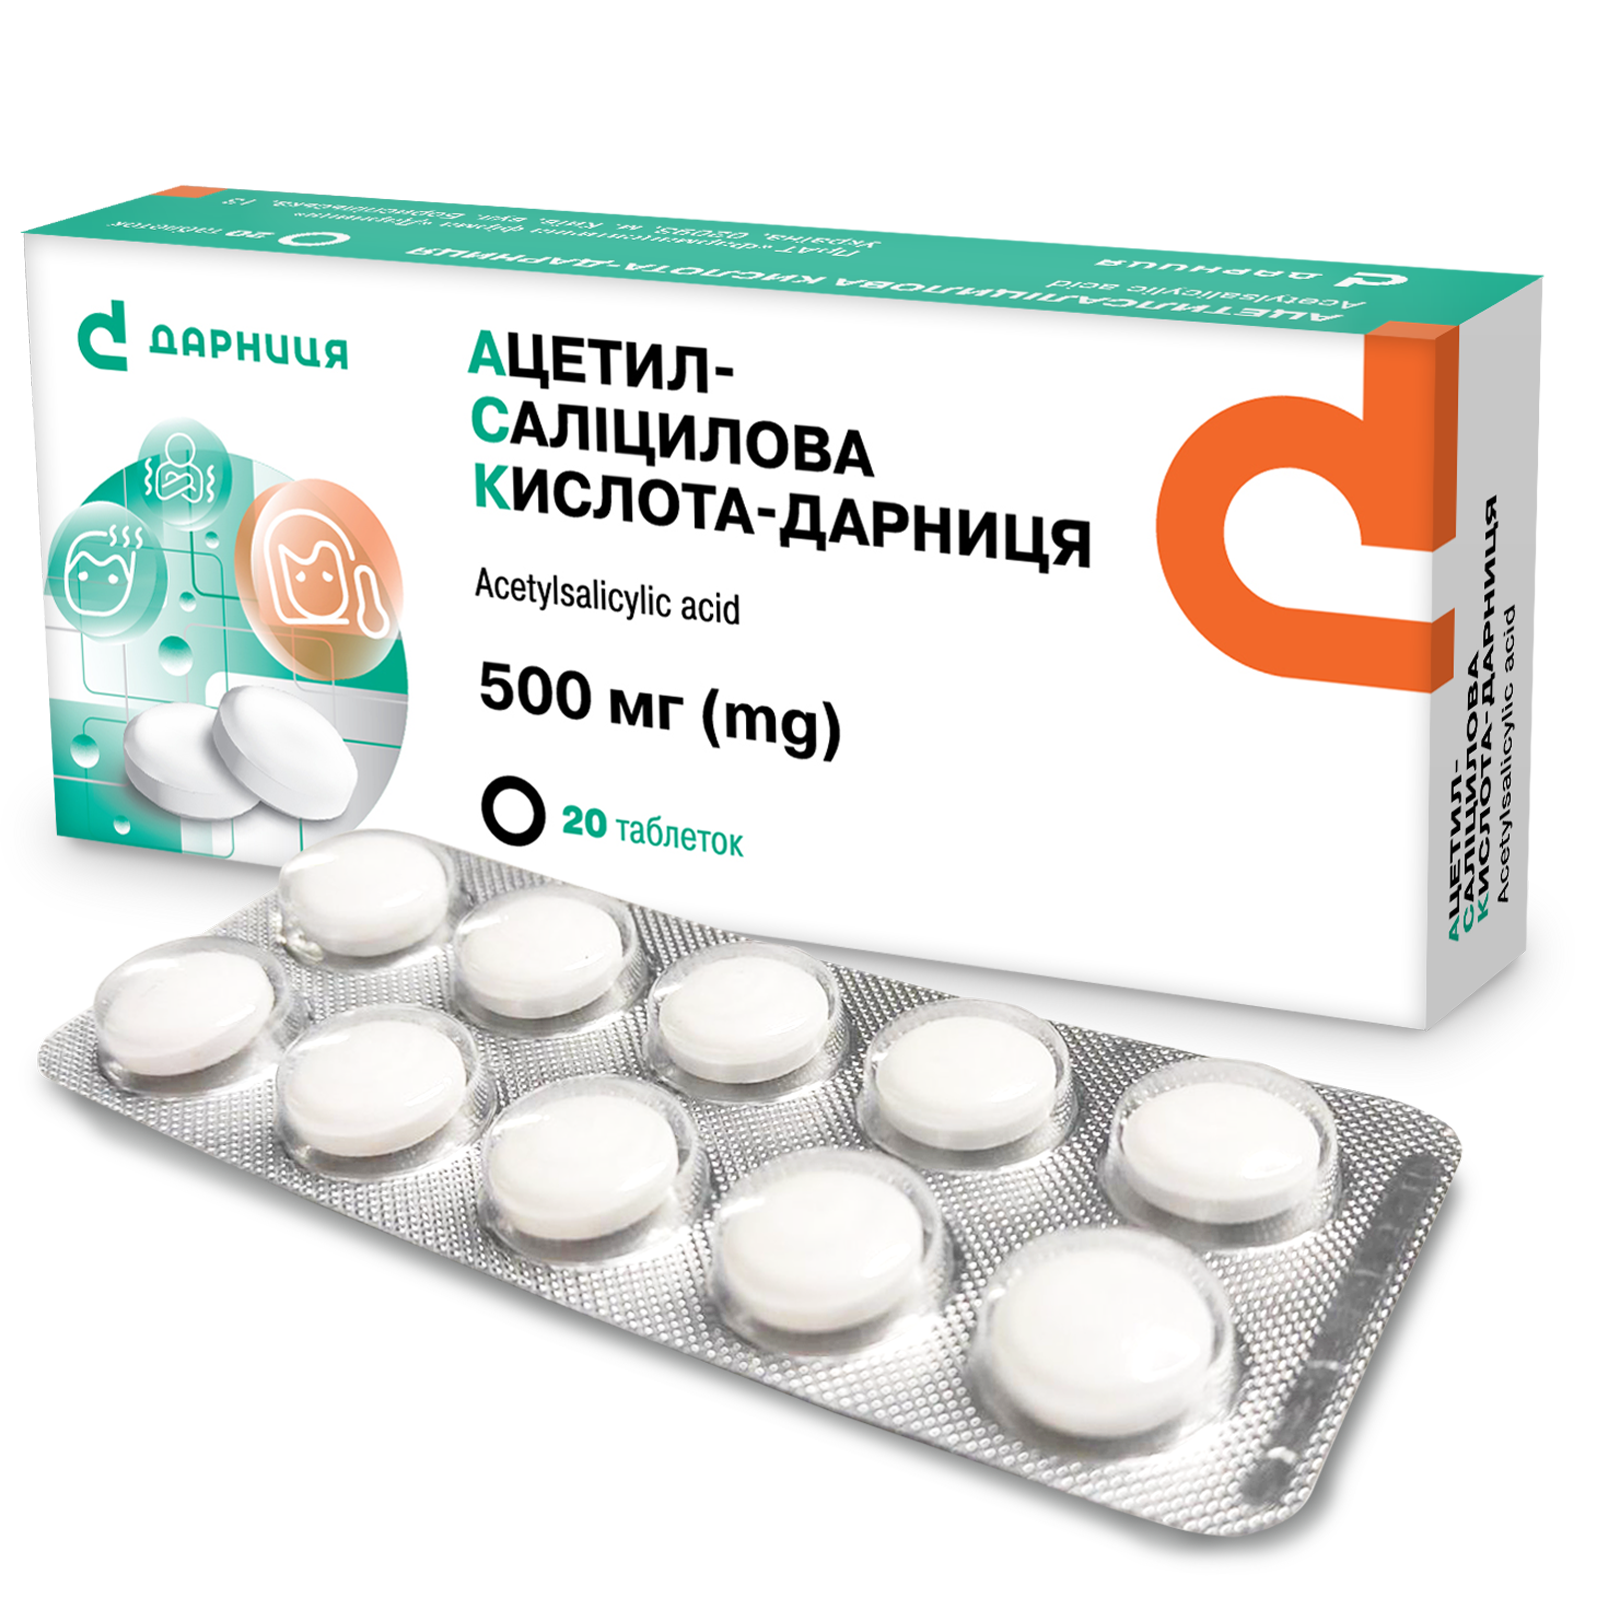 Acetylsalicylic acid-Darnitsa